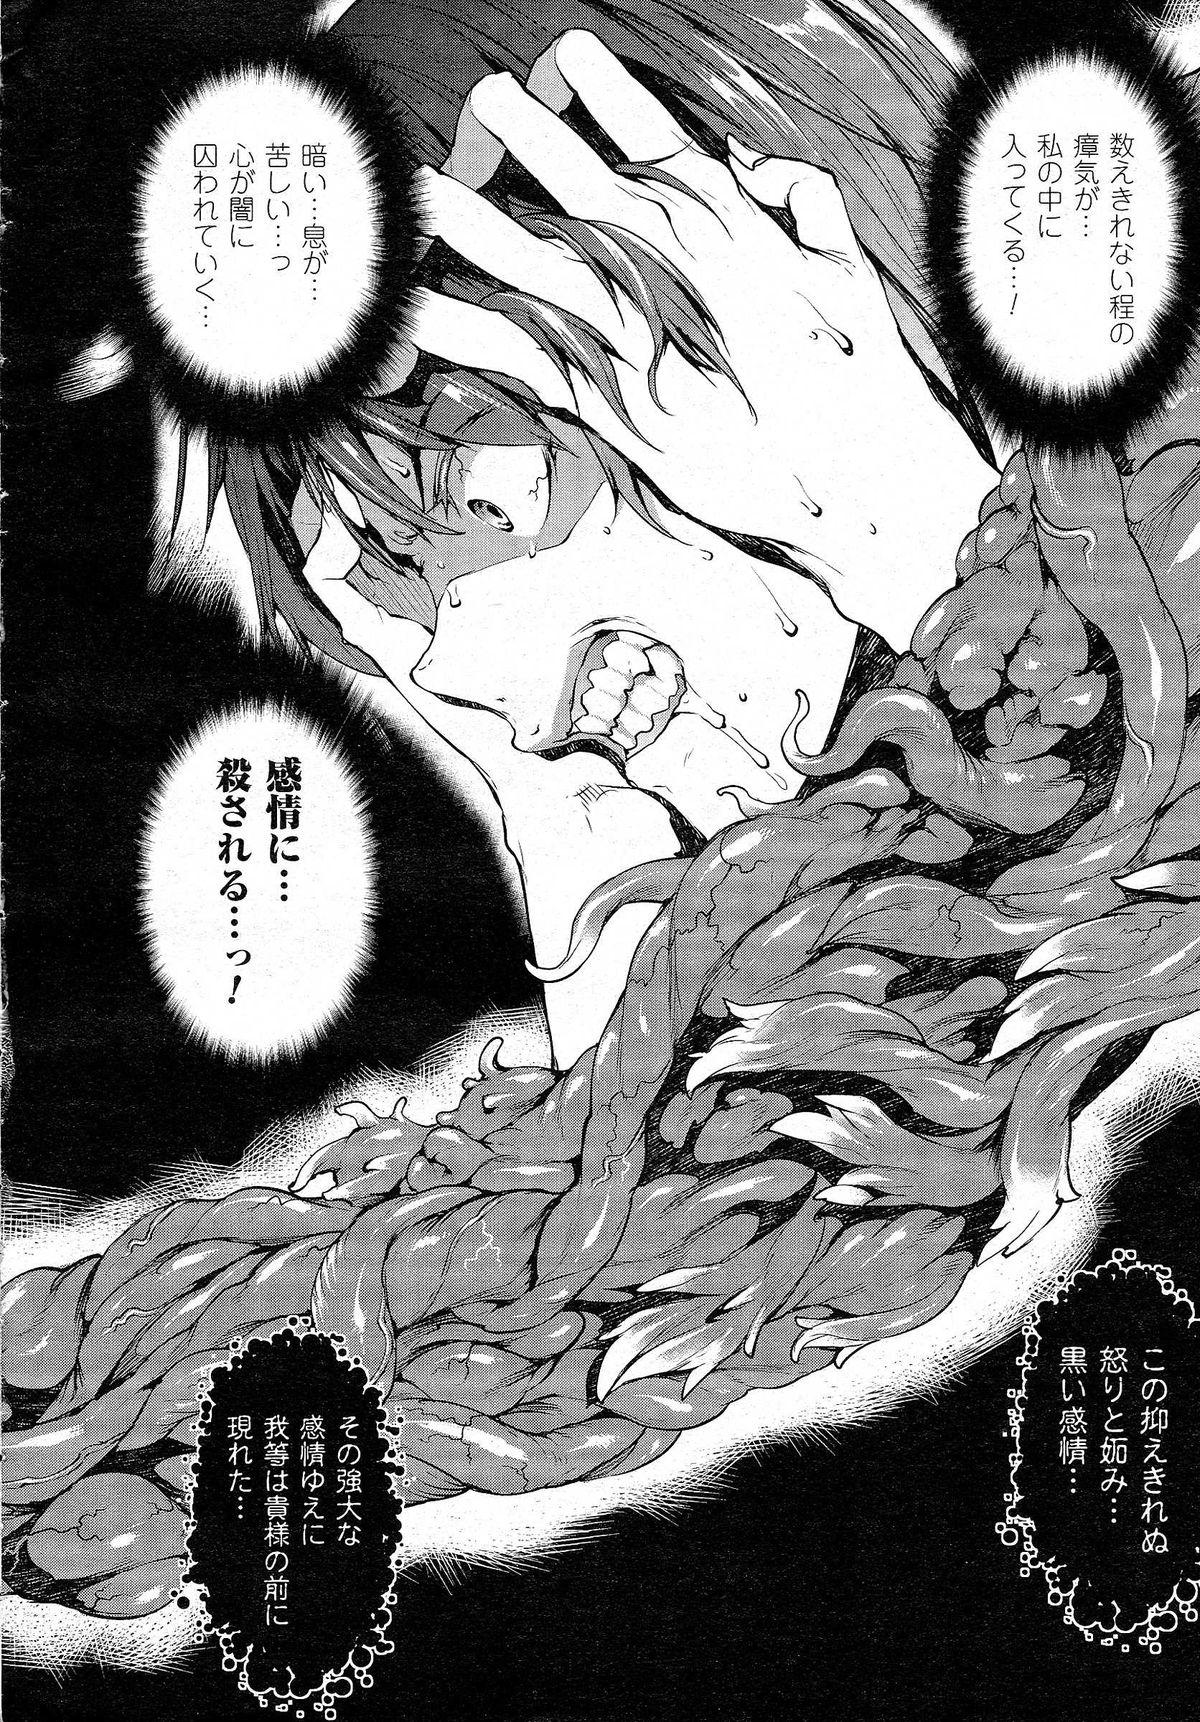 [Erect Sawaru] Shinkyoku no Grimoire -PANDRA saga 2nd story- CH 13-20 1